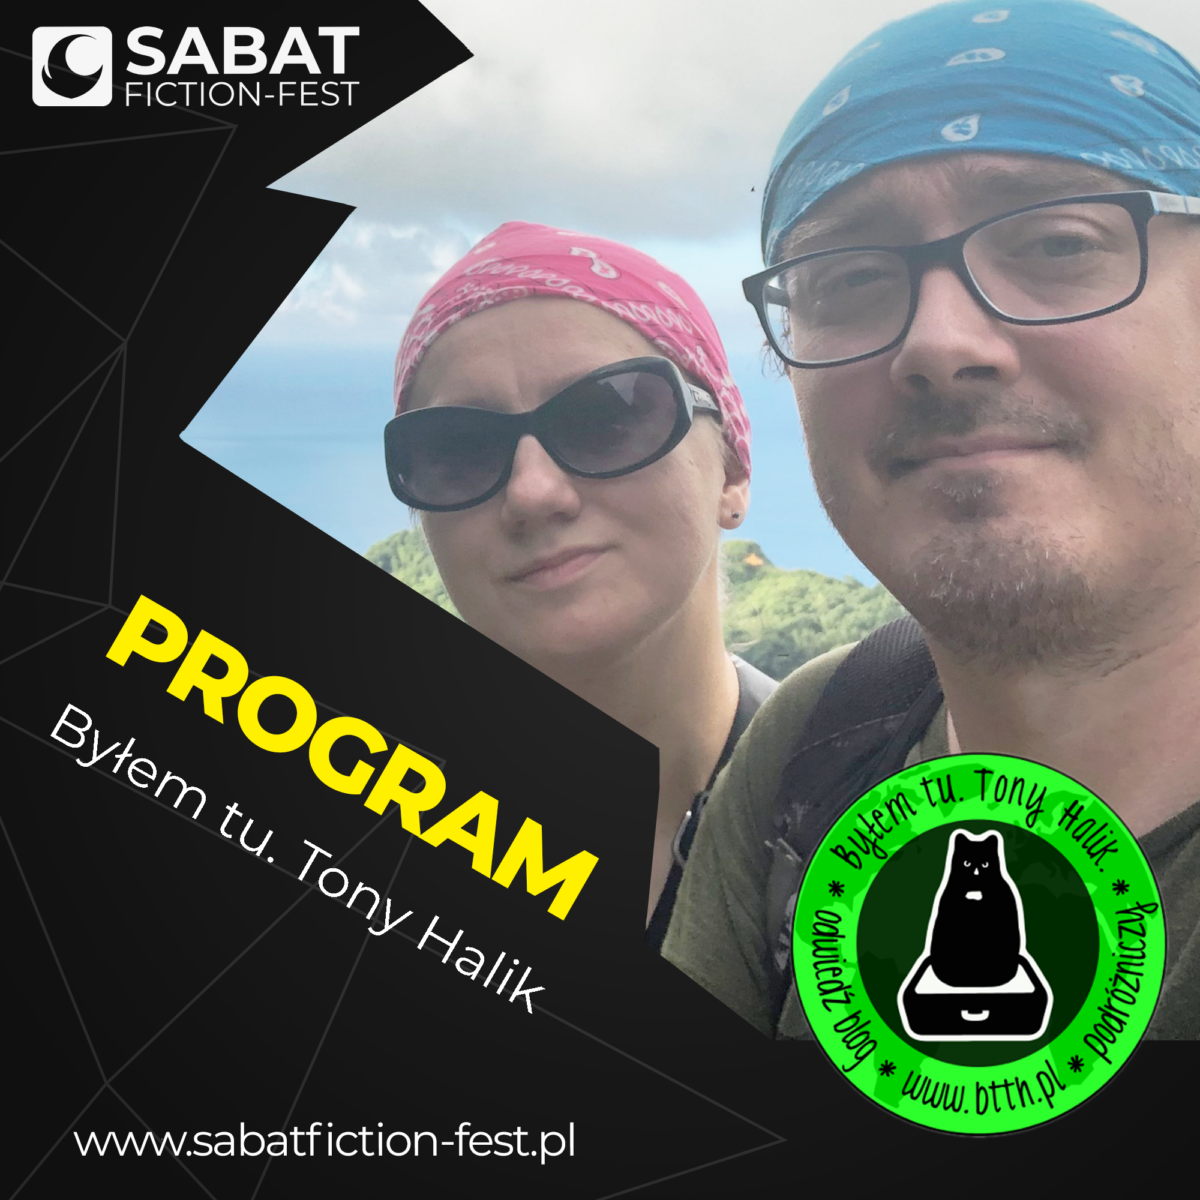 Sabat Fiction-Fest 2021